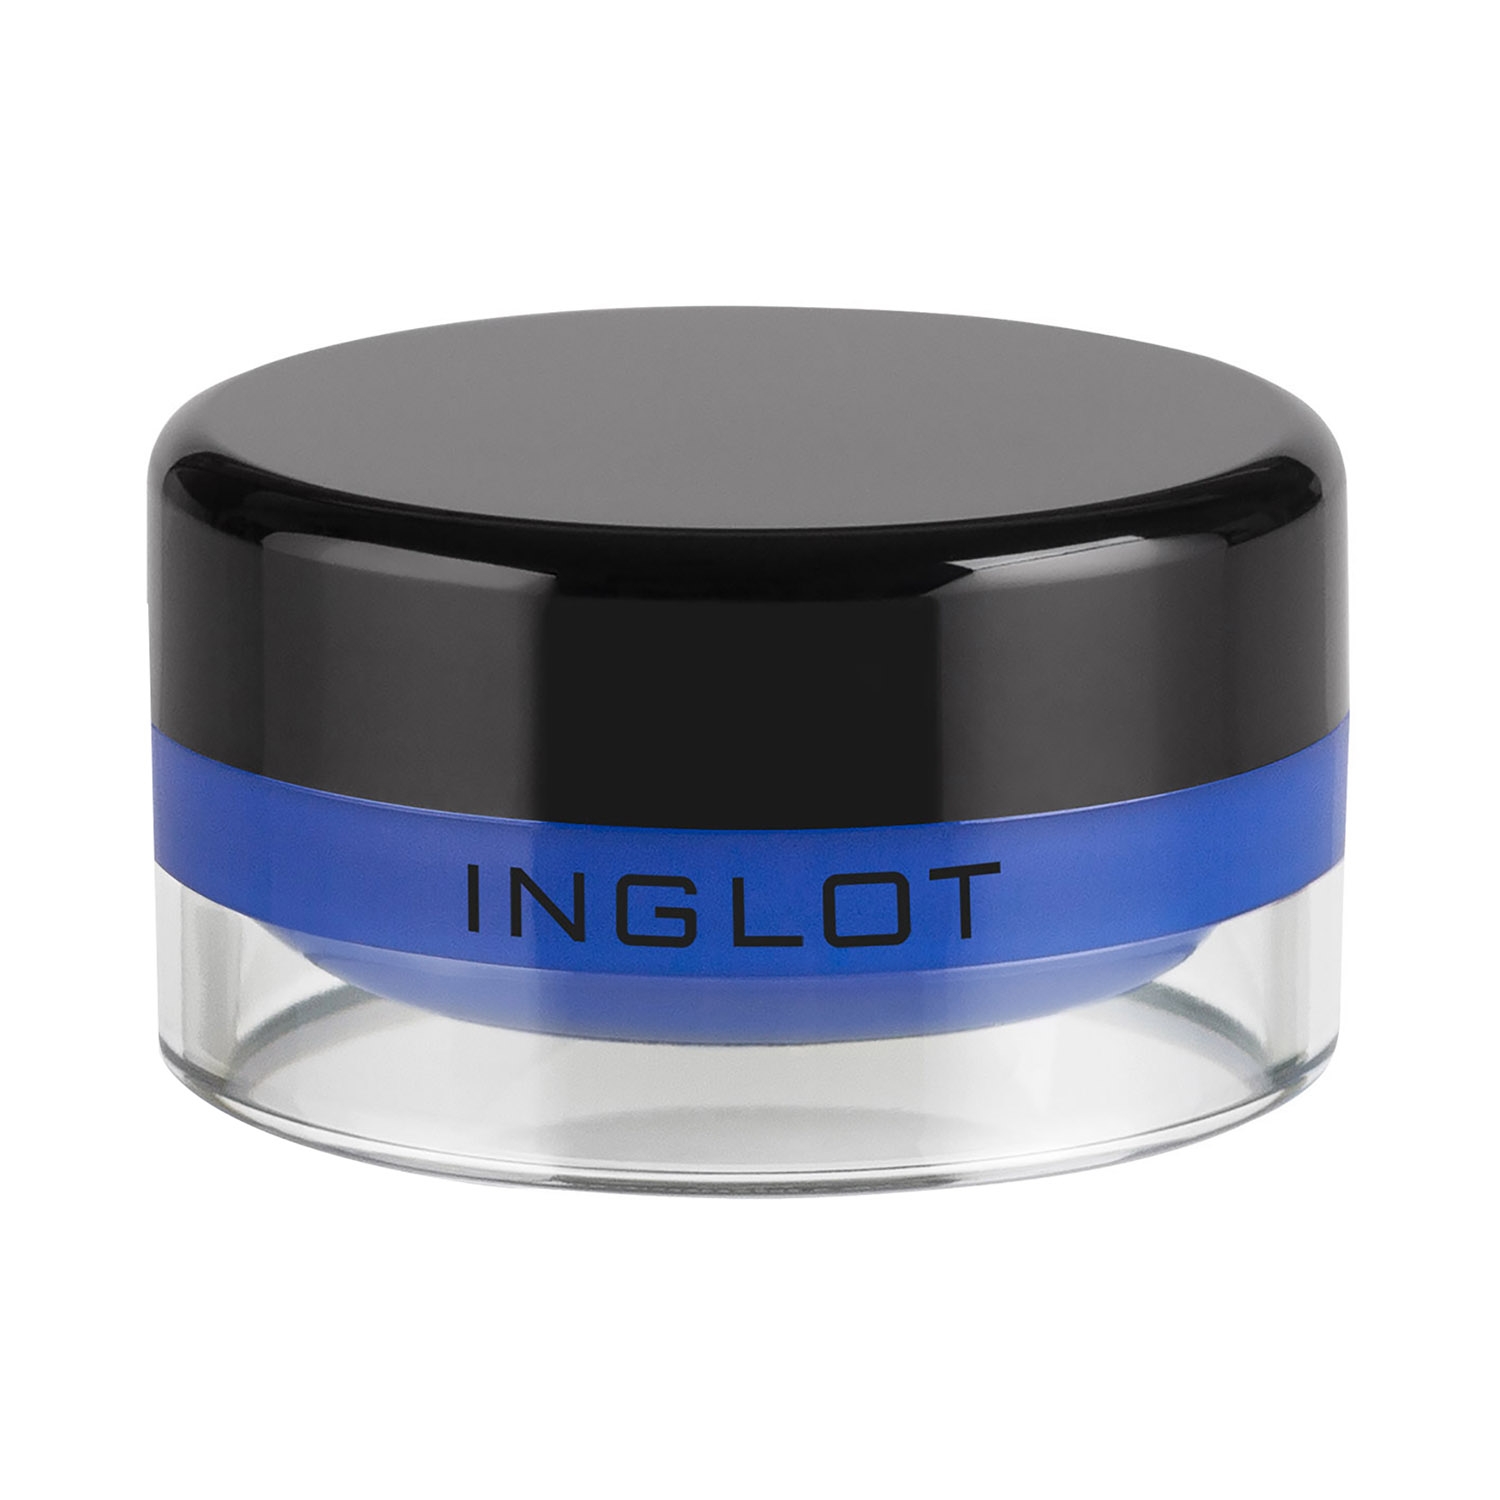 INGLOT | INGLOT Amc Eyeliner Gel - 67 Blue (5.5g)